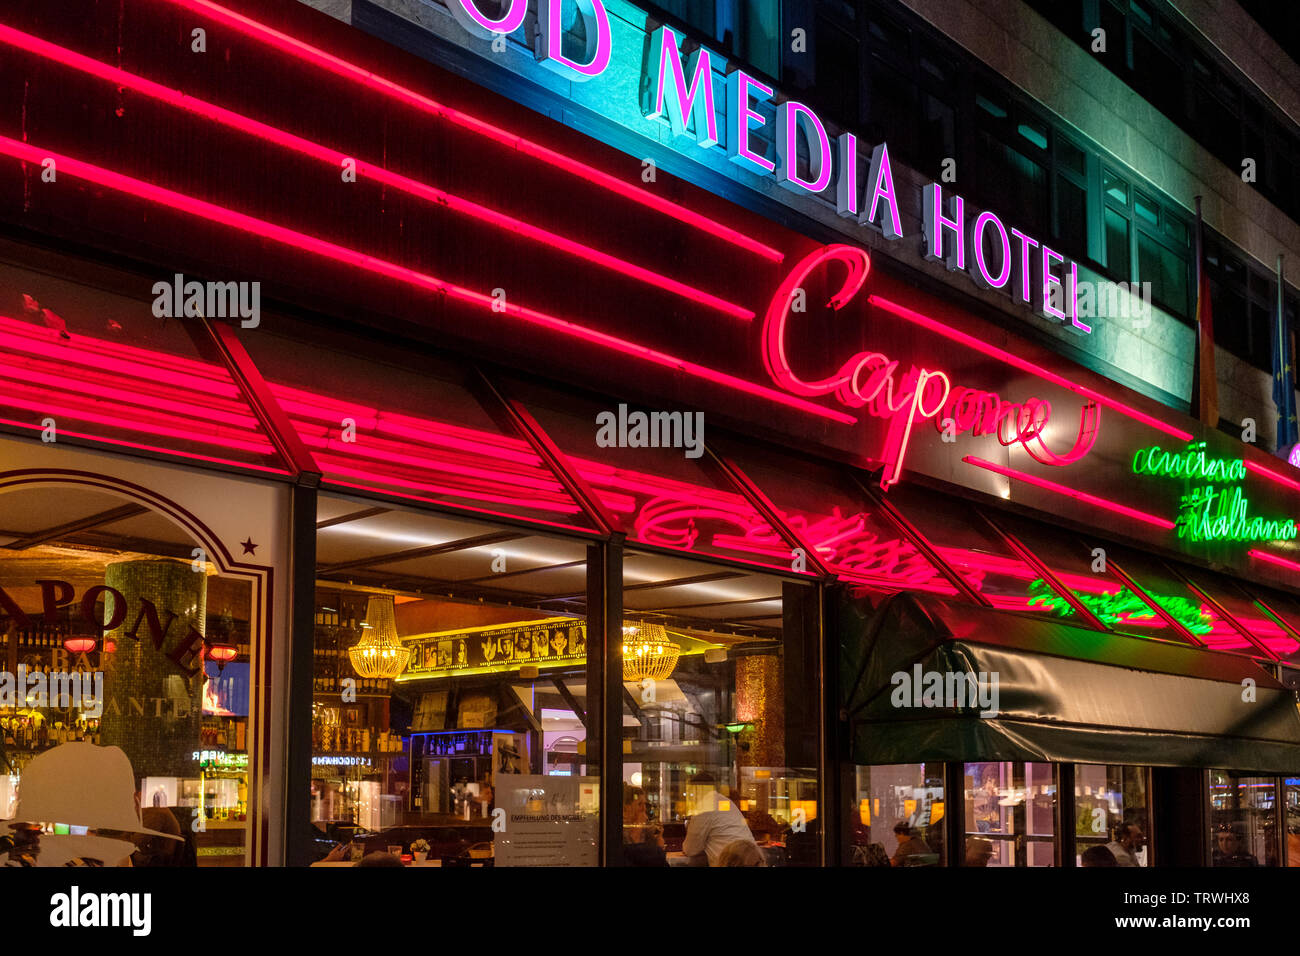 Hollywood Media Hotel Berlin und Capone Restaurant bei Nacht am Kurfürstendamm, Berlin, Deutschland Stockfoto